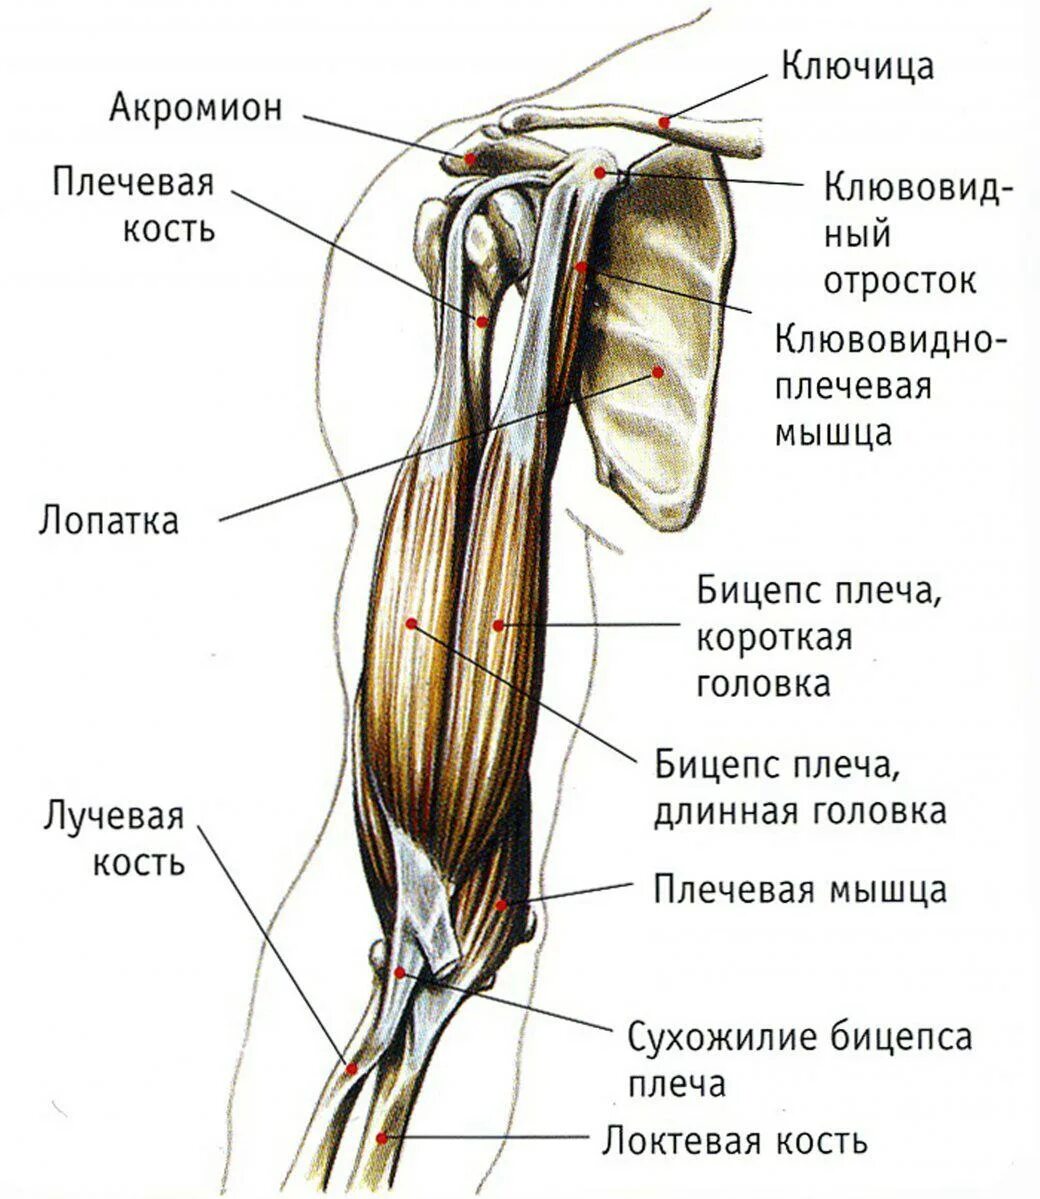 К чему крепится бицепс. Клювовидно плечевая мышца плеча. Двуглавая мышца плеча анатомия. Крепление бицепса к плечу. Мышцы верхней конечности двуглавая.